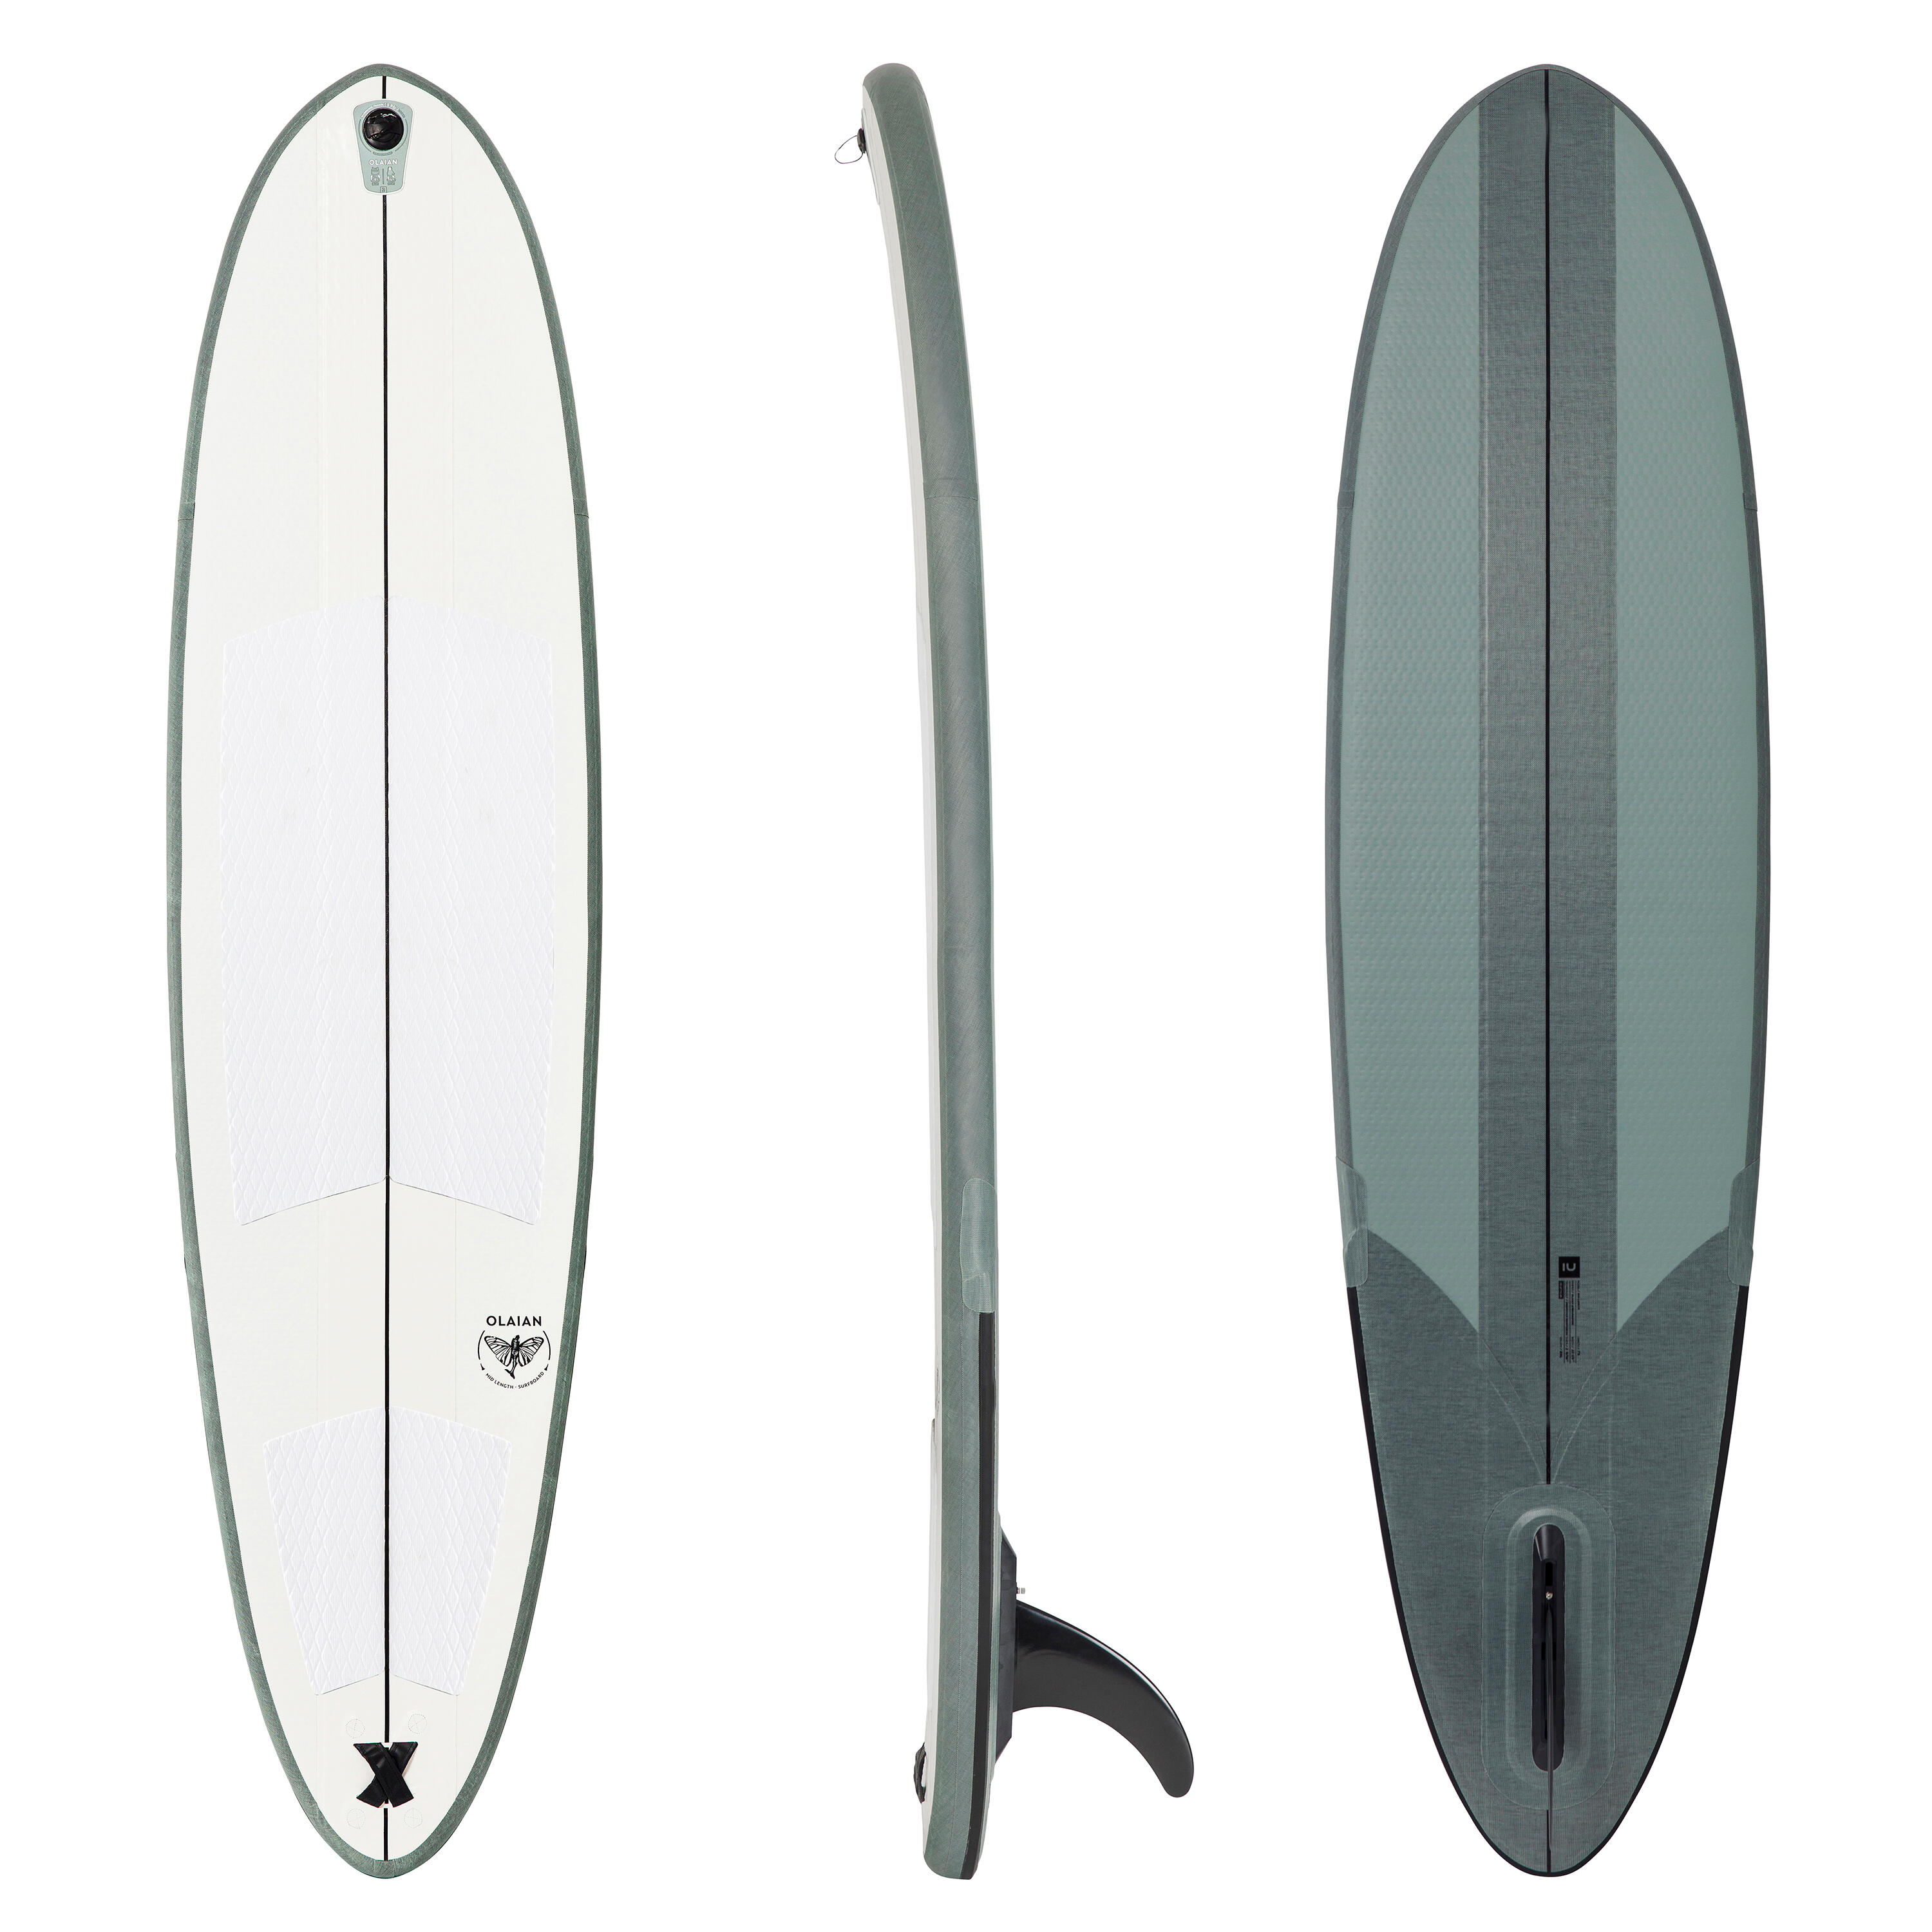 Placă gonflabilă surf 500 7’6″ Compact (fără pompă și leash) La Oferta Online decathlon imagine La Oferta Online